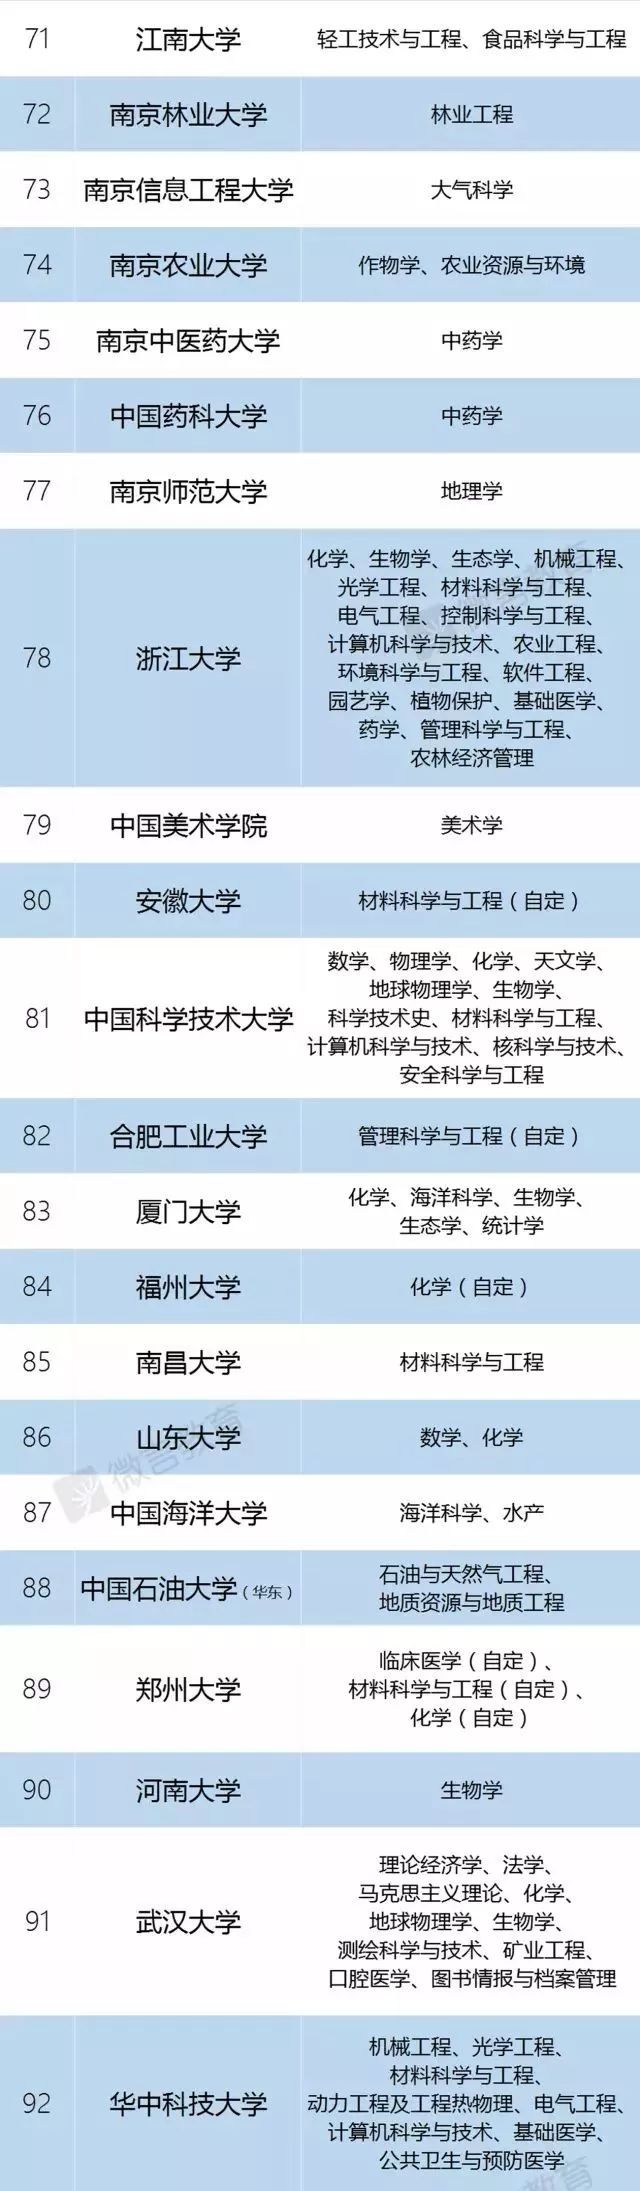 喜讯| 南京大学入选"双一流"建设高校,15个学科入选